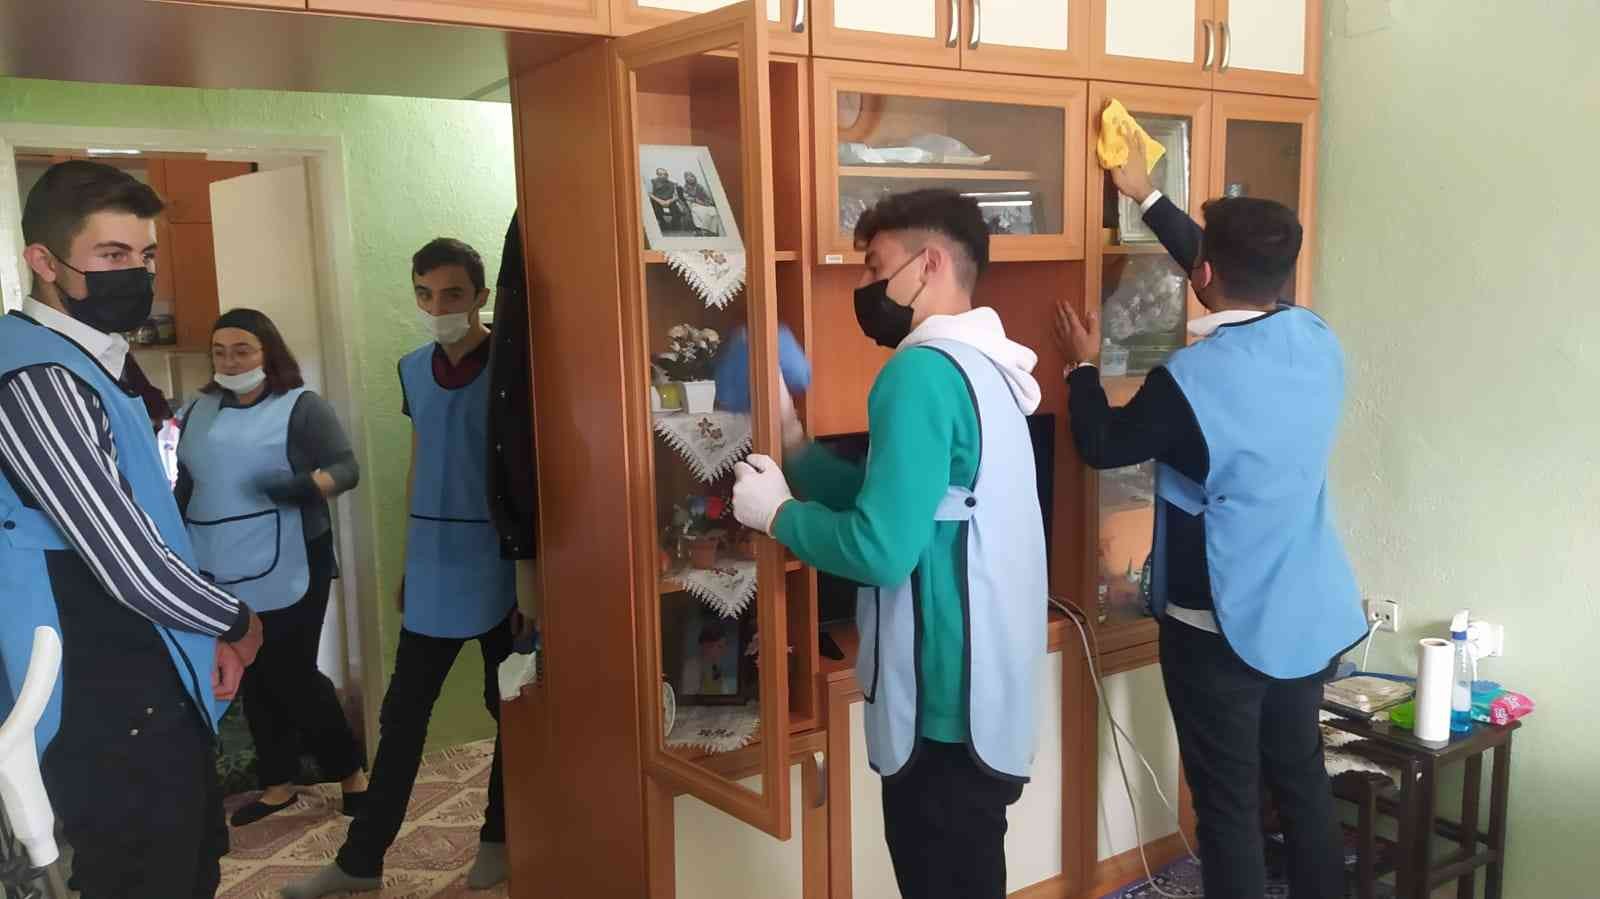 Engelli kadının evini lise öğrencileri temizledi #kutahya